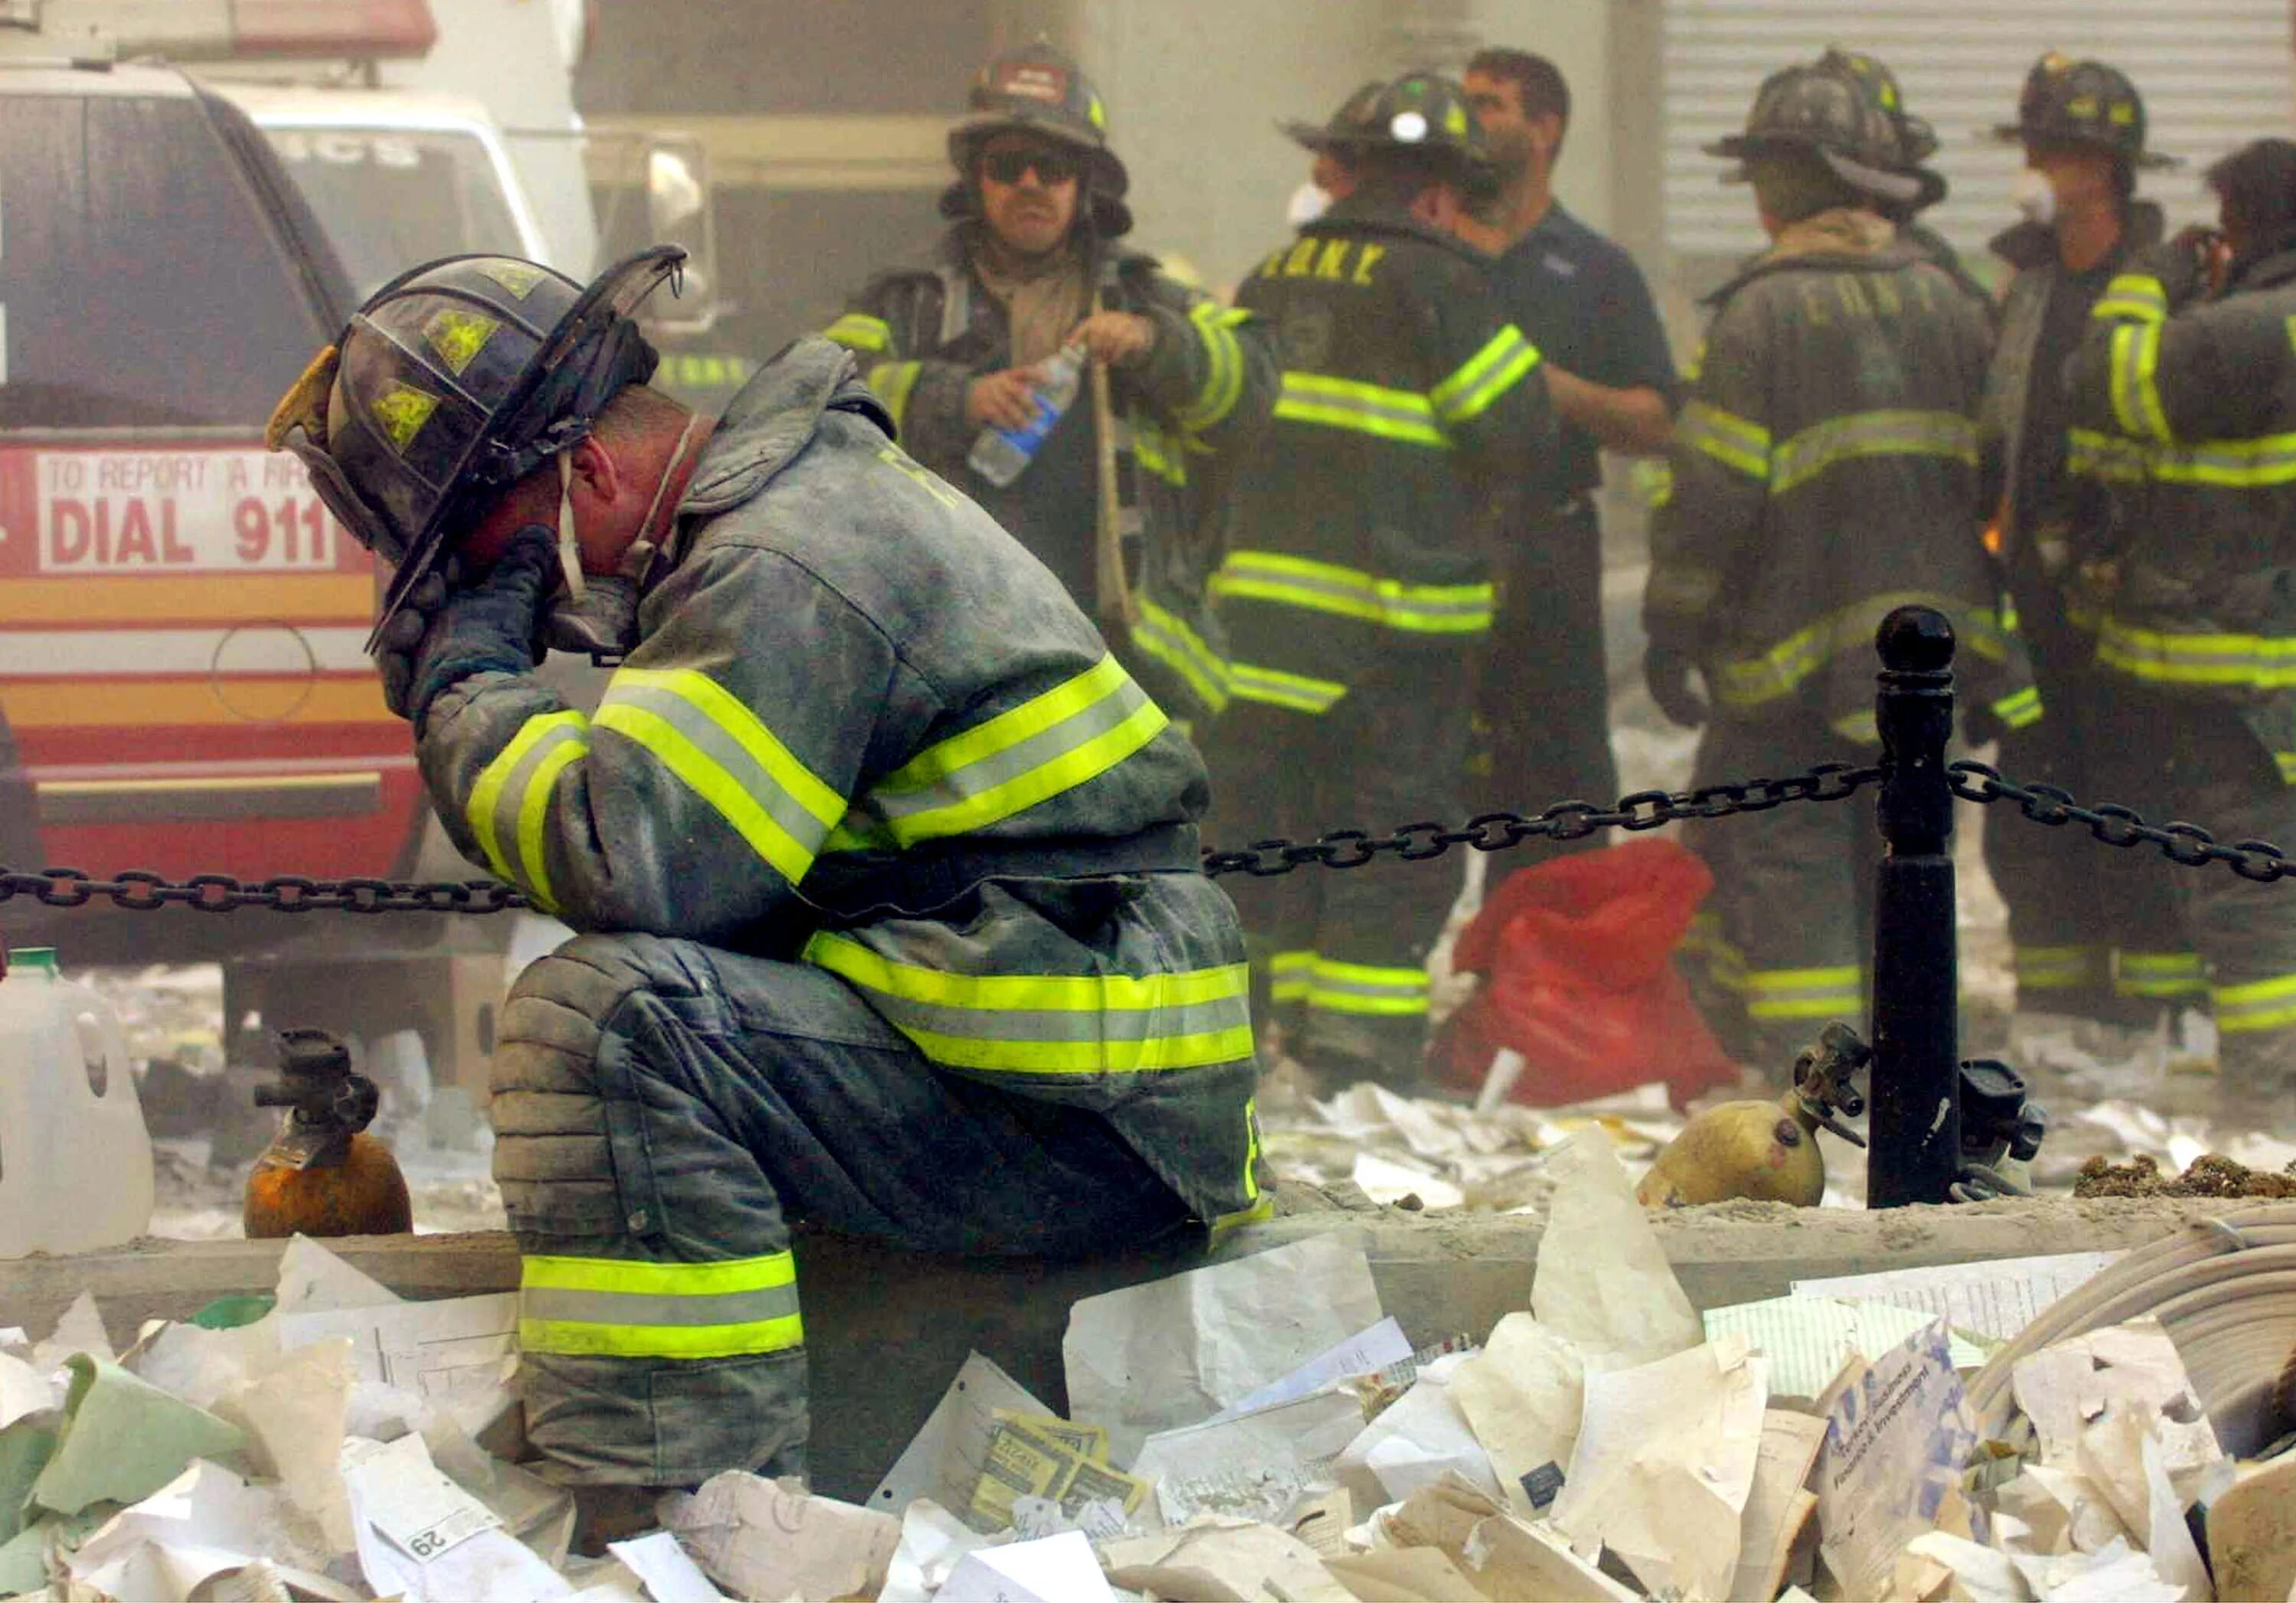 Спасатели 11 сентября 2001. Жертвы теракта 11 сентября 2001. Пожарные Нью-Йорка 11 сентября. Погибшие пожарные 11 сентября 2001. Теракты 11 сентября 2001 года сколько погибших